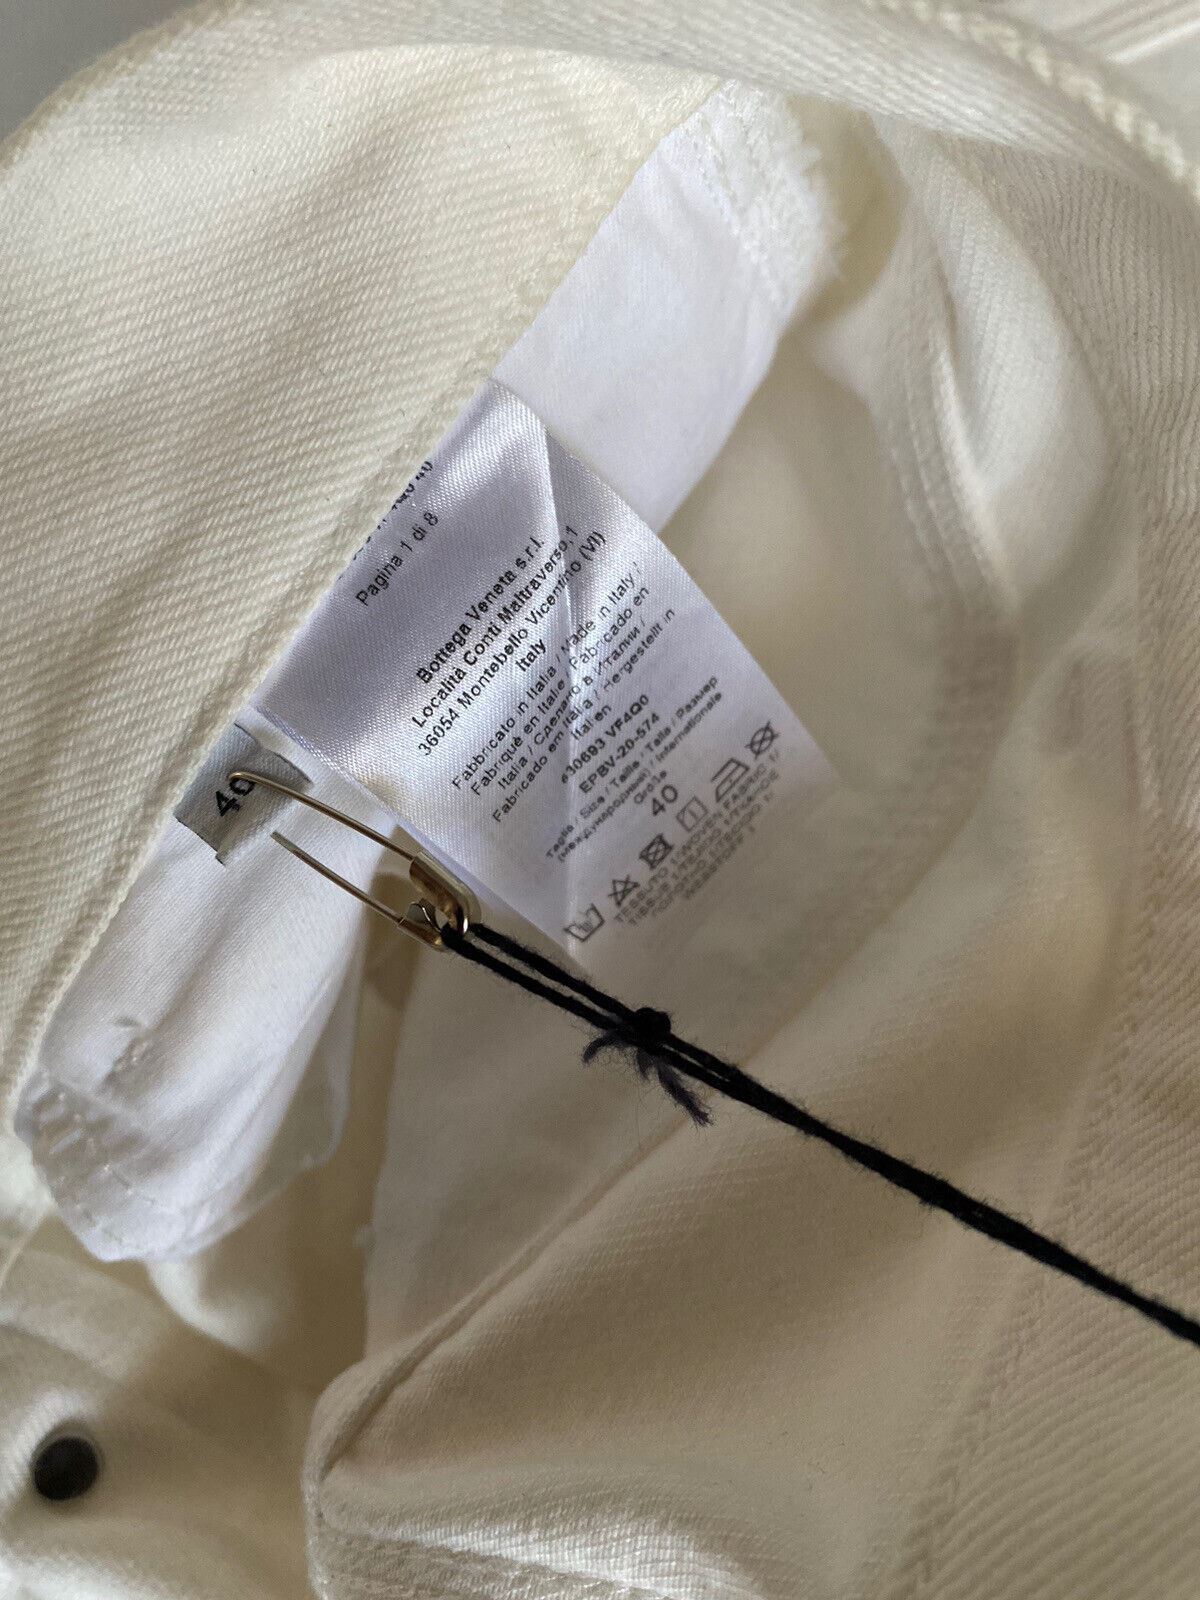 Neu mit Etikett: 950 $ Bottega Veneta High-Waist-Jeans Weiß 4 US (40 Euro) 630693 Italien